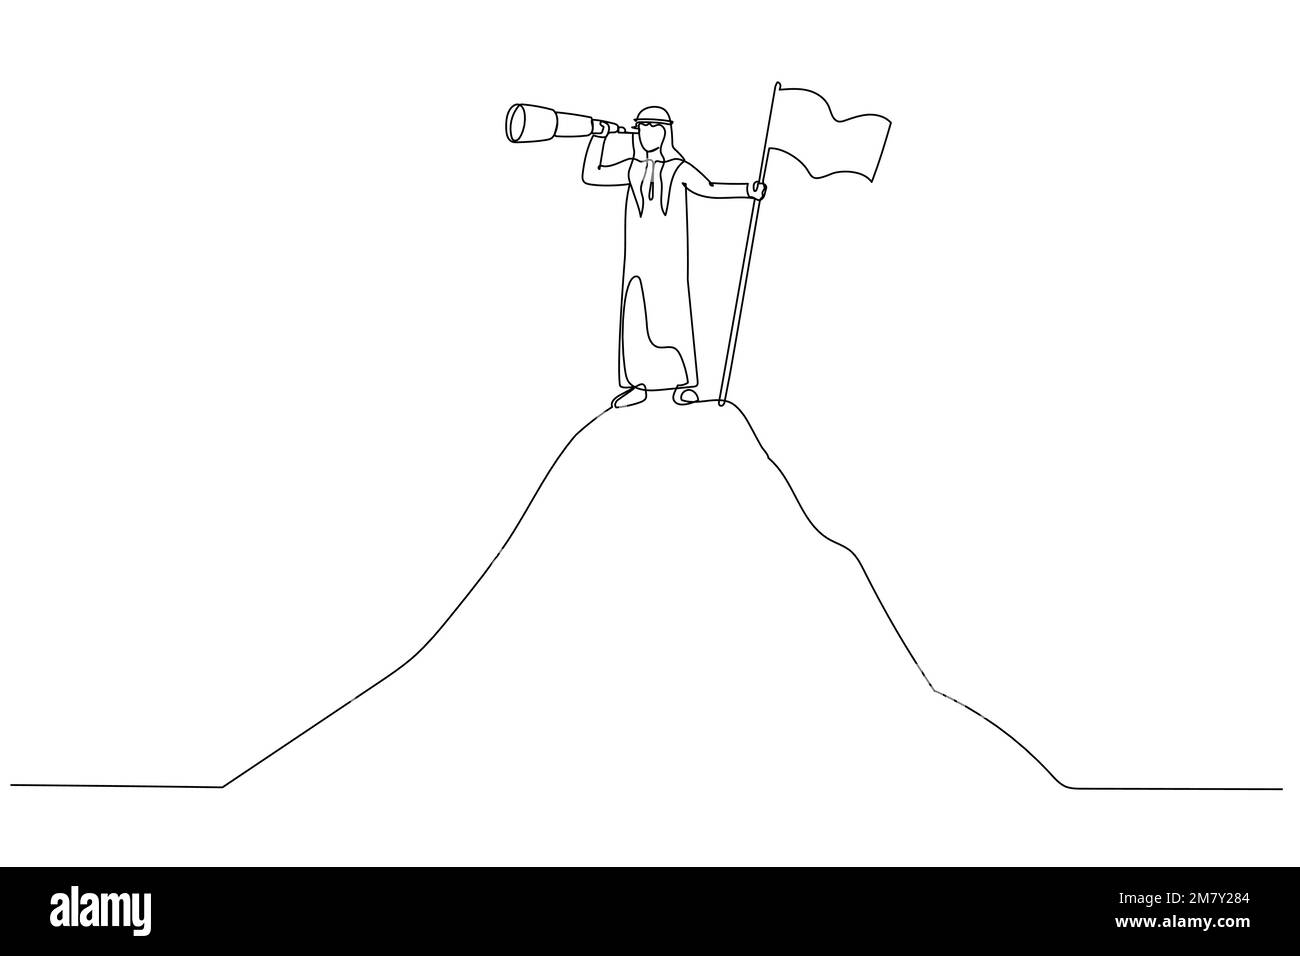 Erfolgszeichnung der arabische Mann hält einen Spyglass-Stand neben der Flagge auf dem Bergkonzept der Chance. Design für Strichkunst Stock Vektor